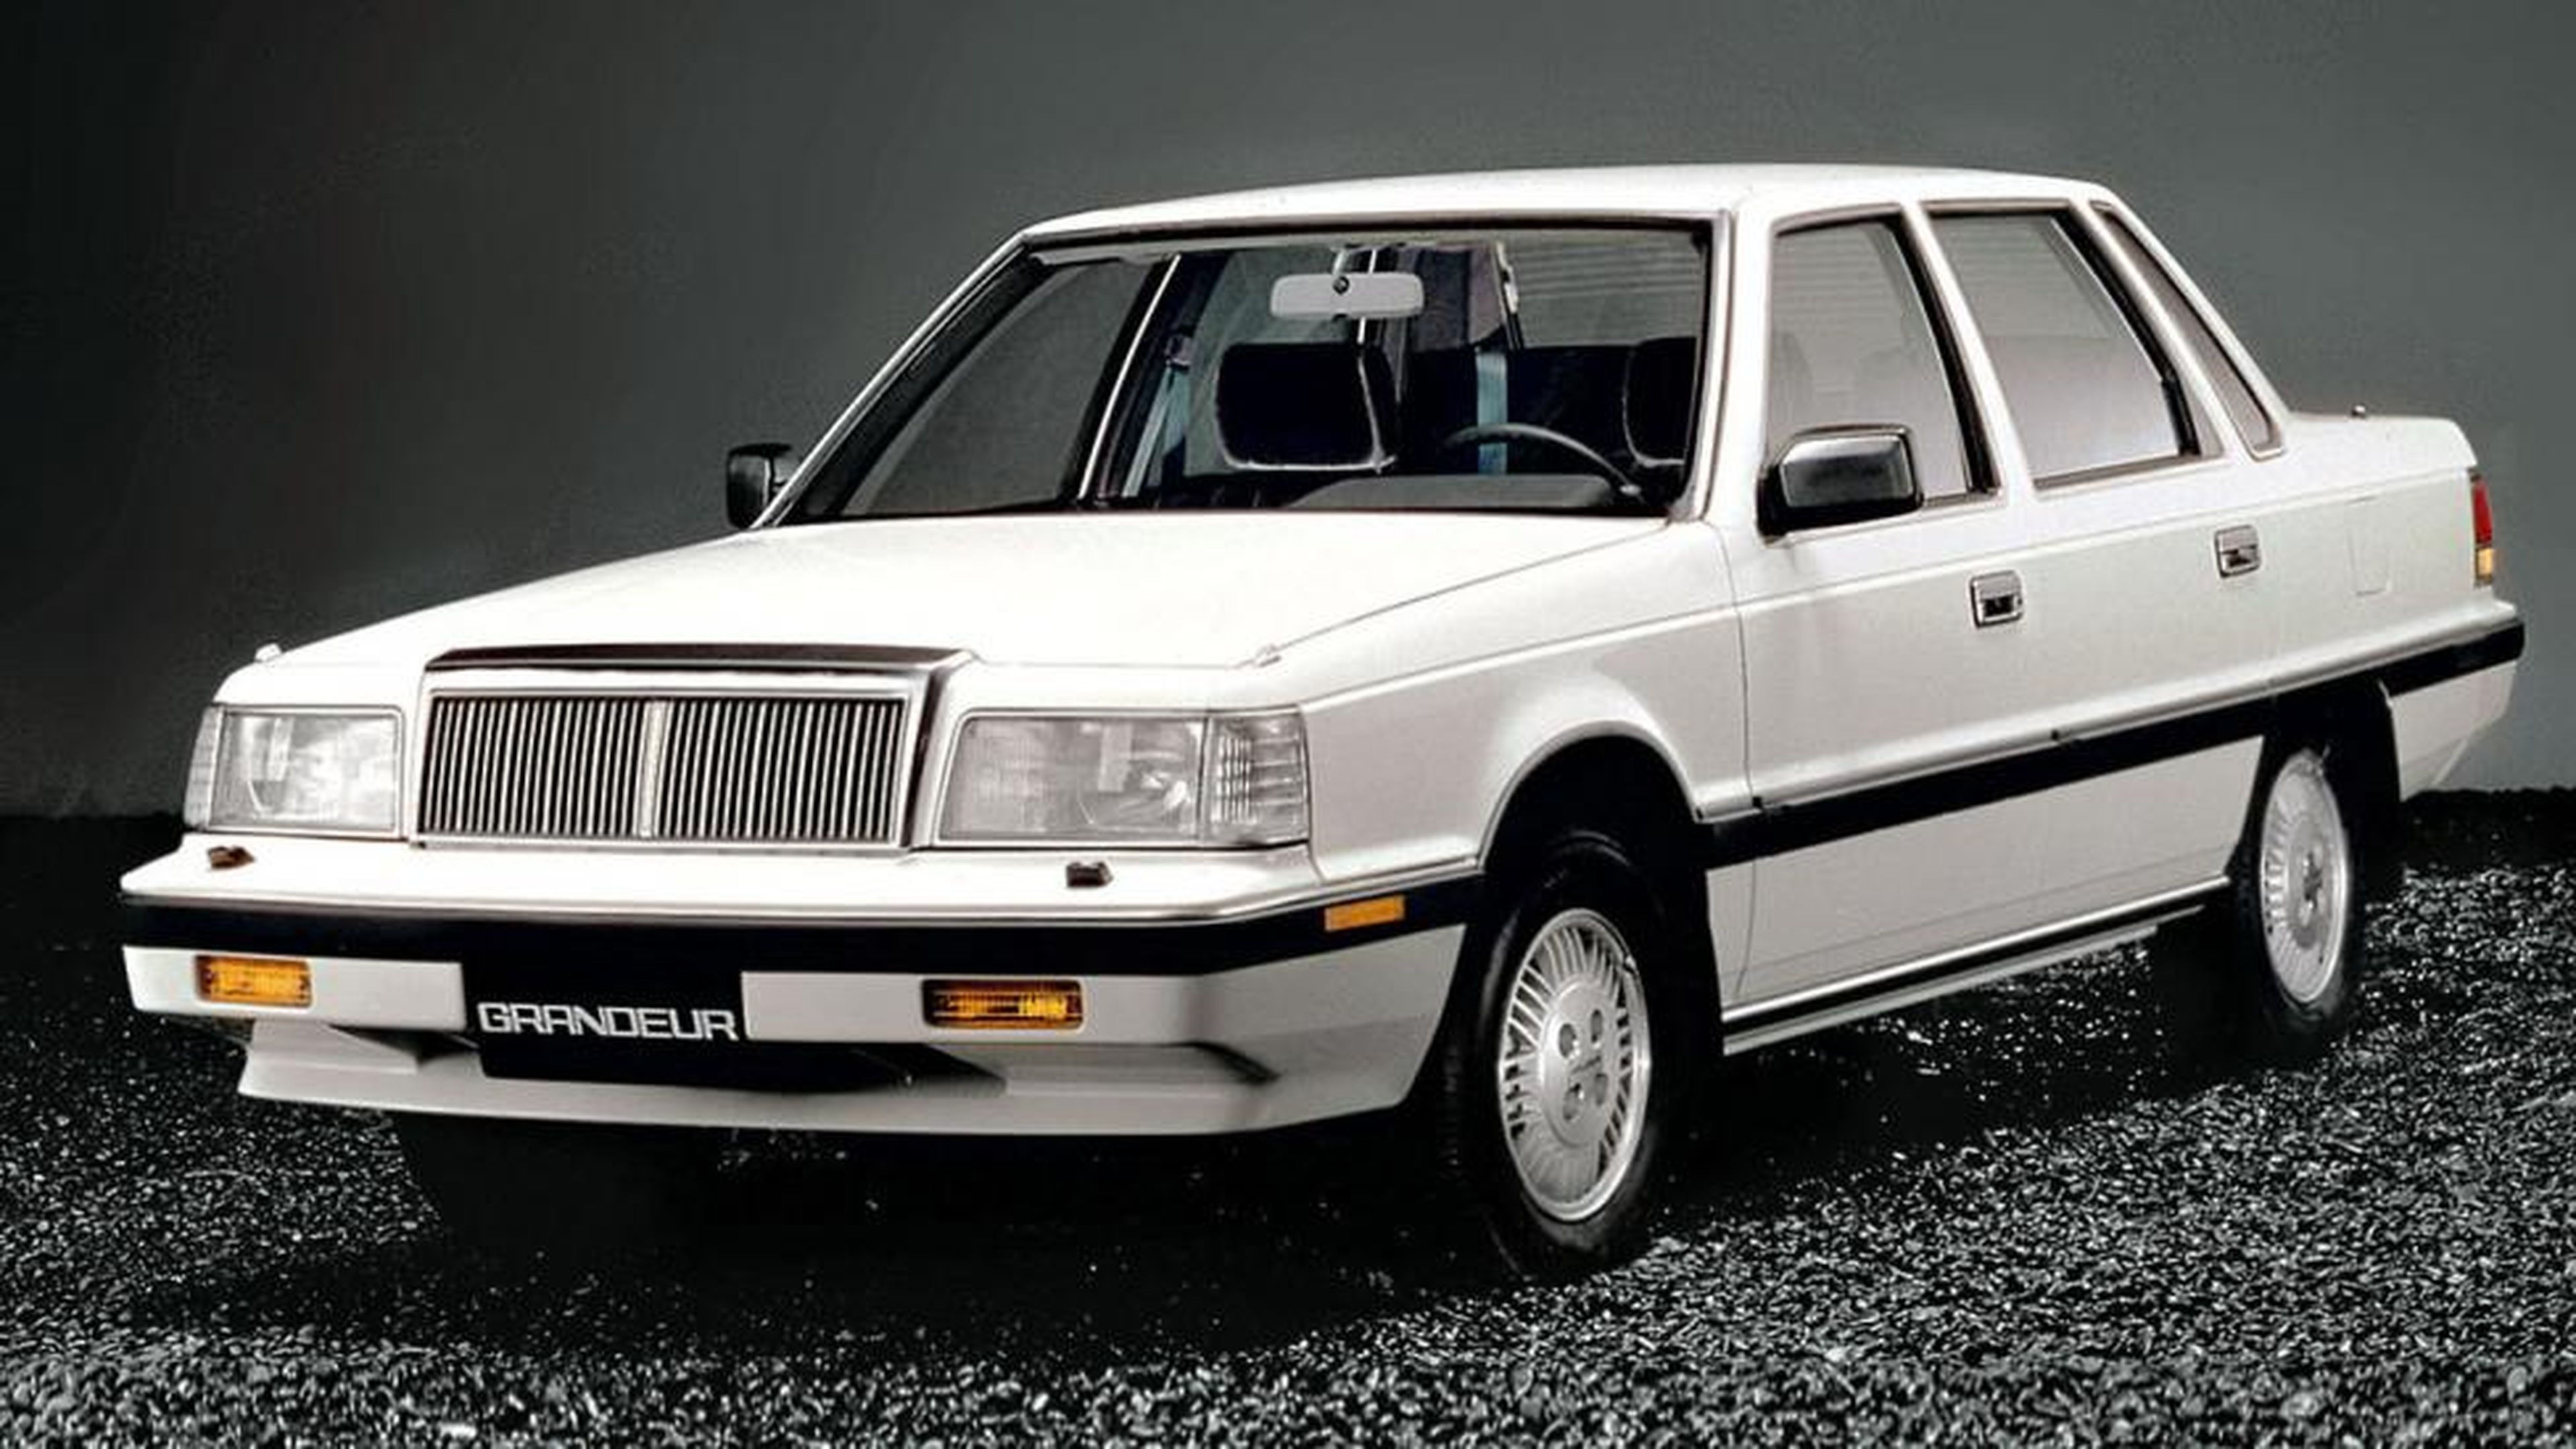 El Hyundai Grandeur original, de los años 80.